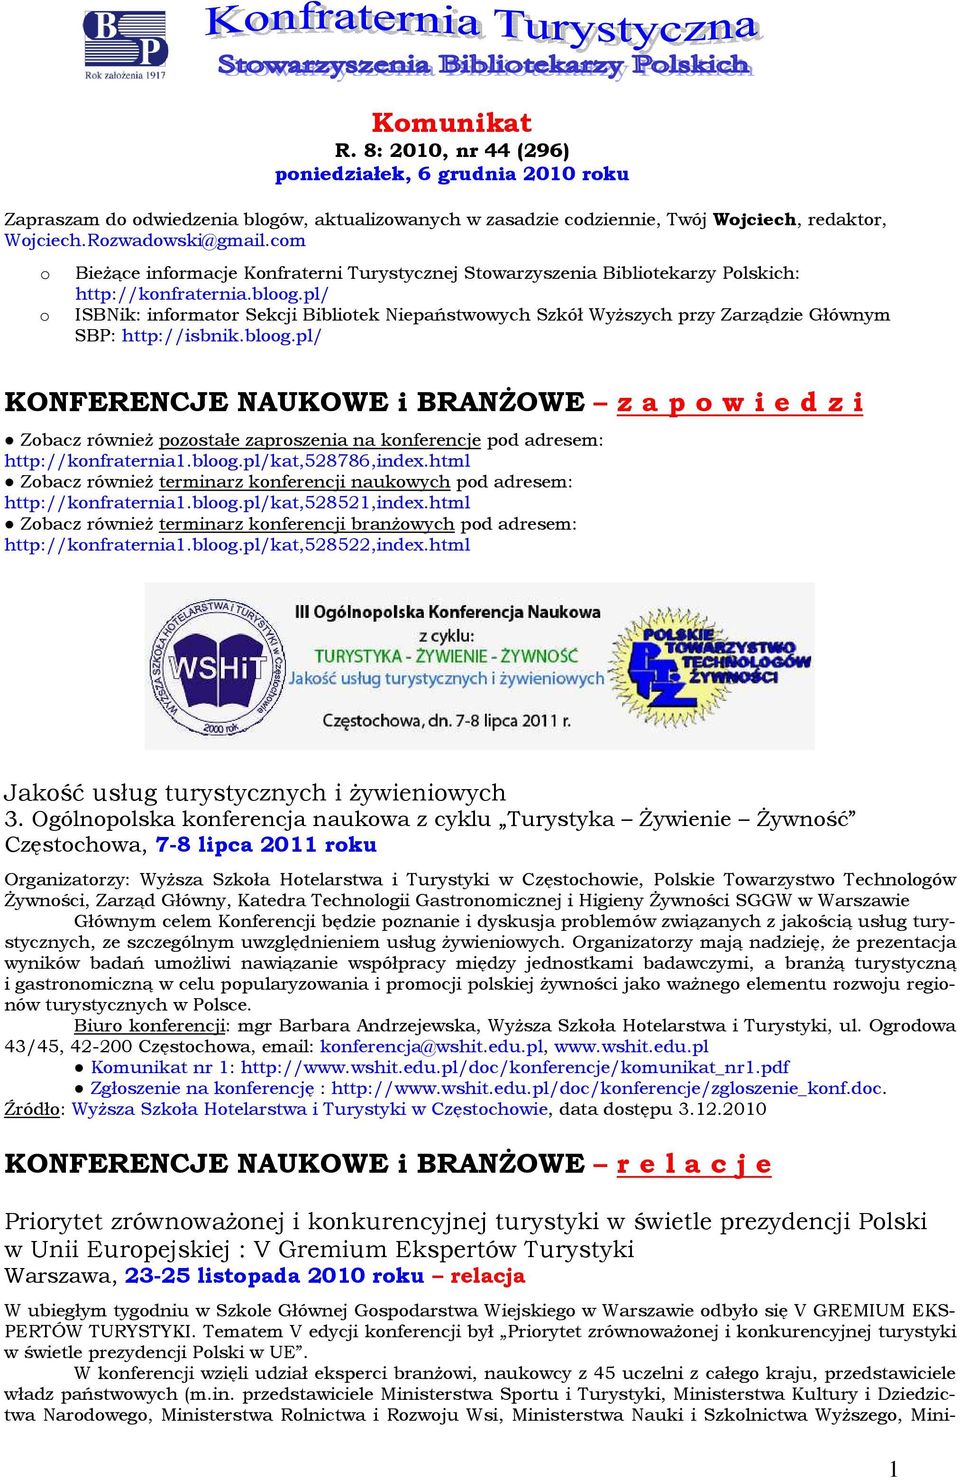 pl/ ISBNik: infrmatr Sekcji Biblitek Niepaństwwych Szkół Wyższych przy Zarządzie Głównym SBP: http://isbnik.blg.